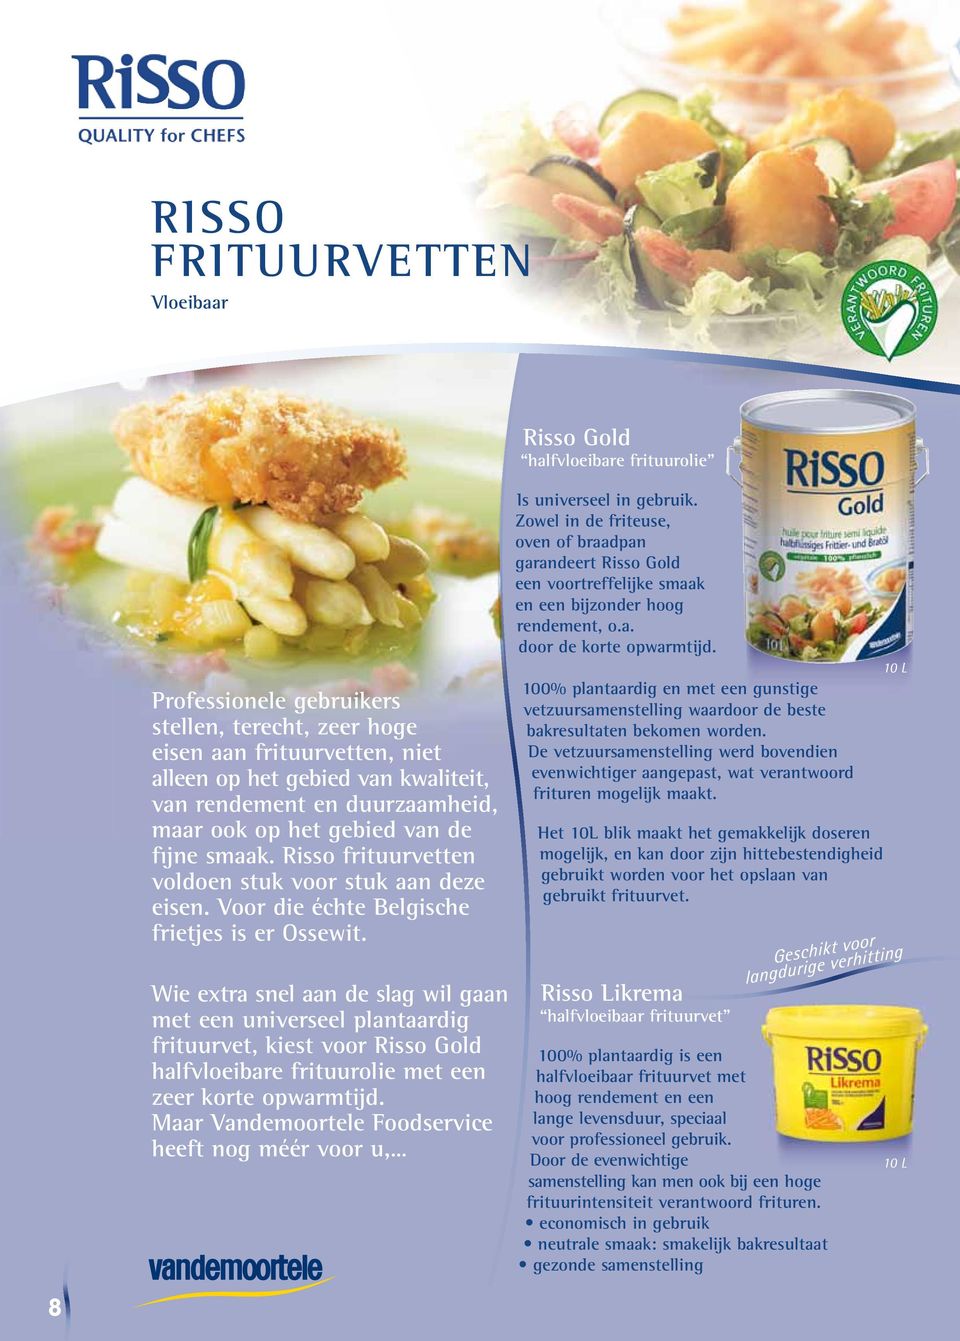 Zowel in de friteuse, oven of braadpan garandeert Risso Gold een voortreffelijke smaak en een bijzonder hoog rendement, o.a. door de korte opwarmtijd.